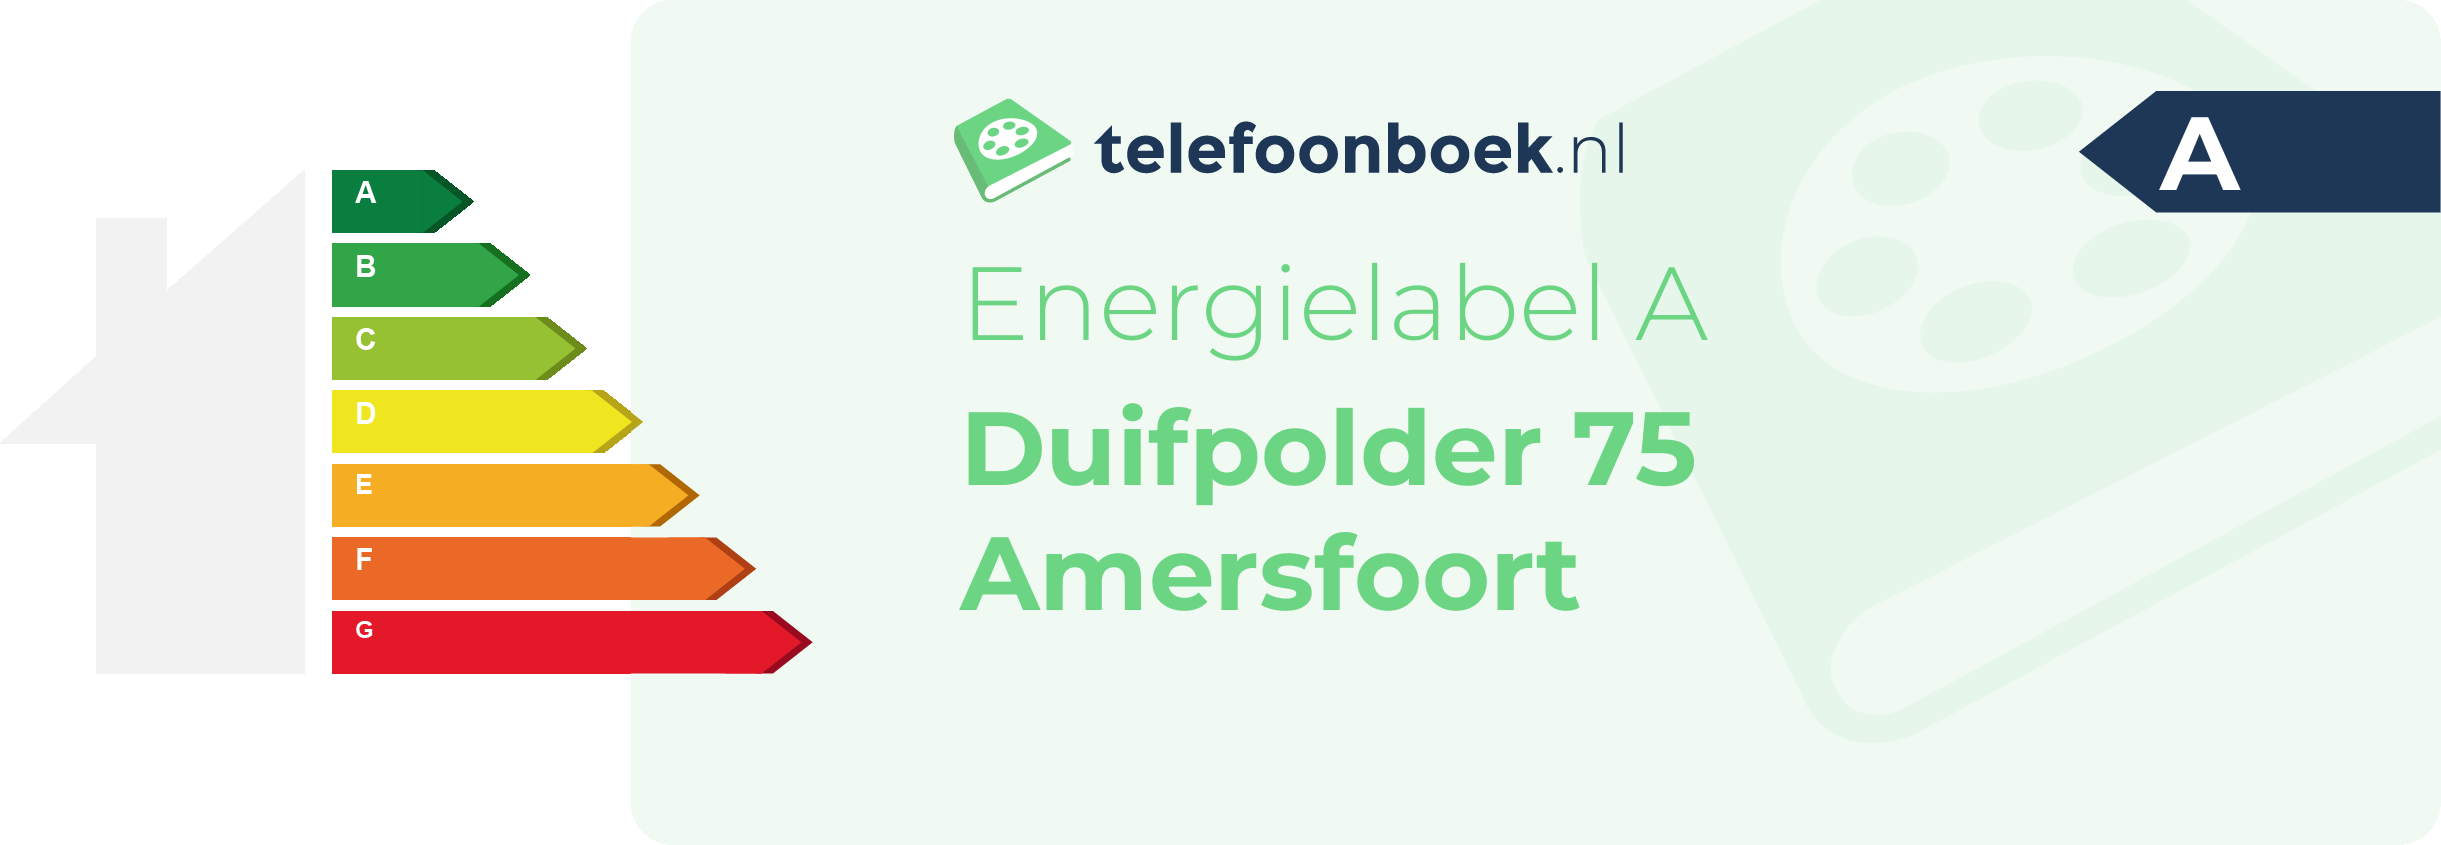 Energielabel Duifpolder 75 Amersfoort